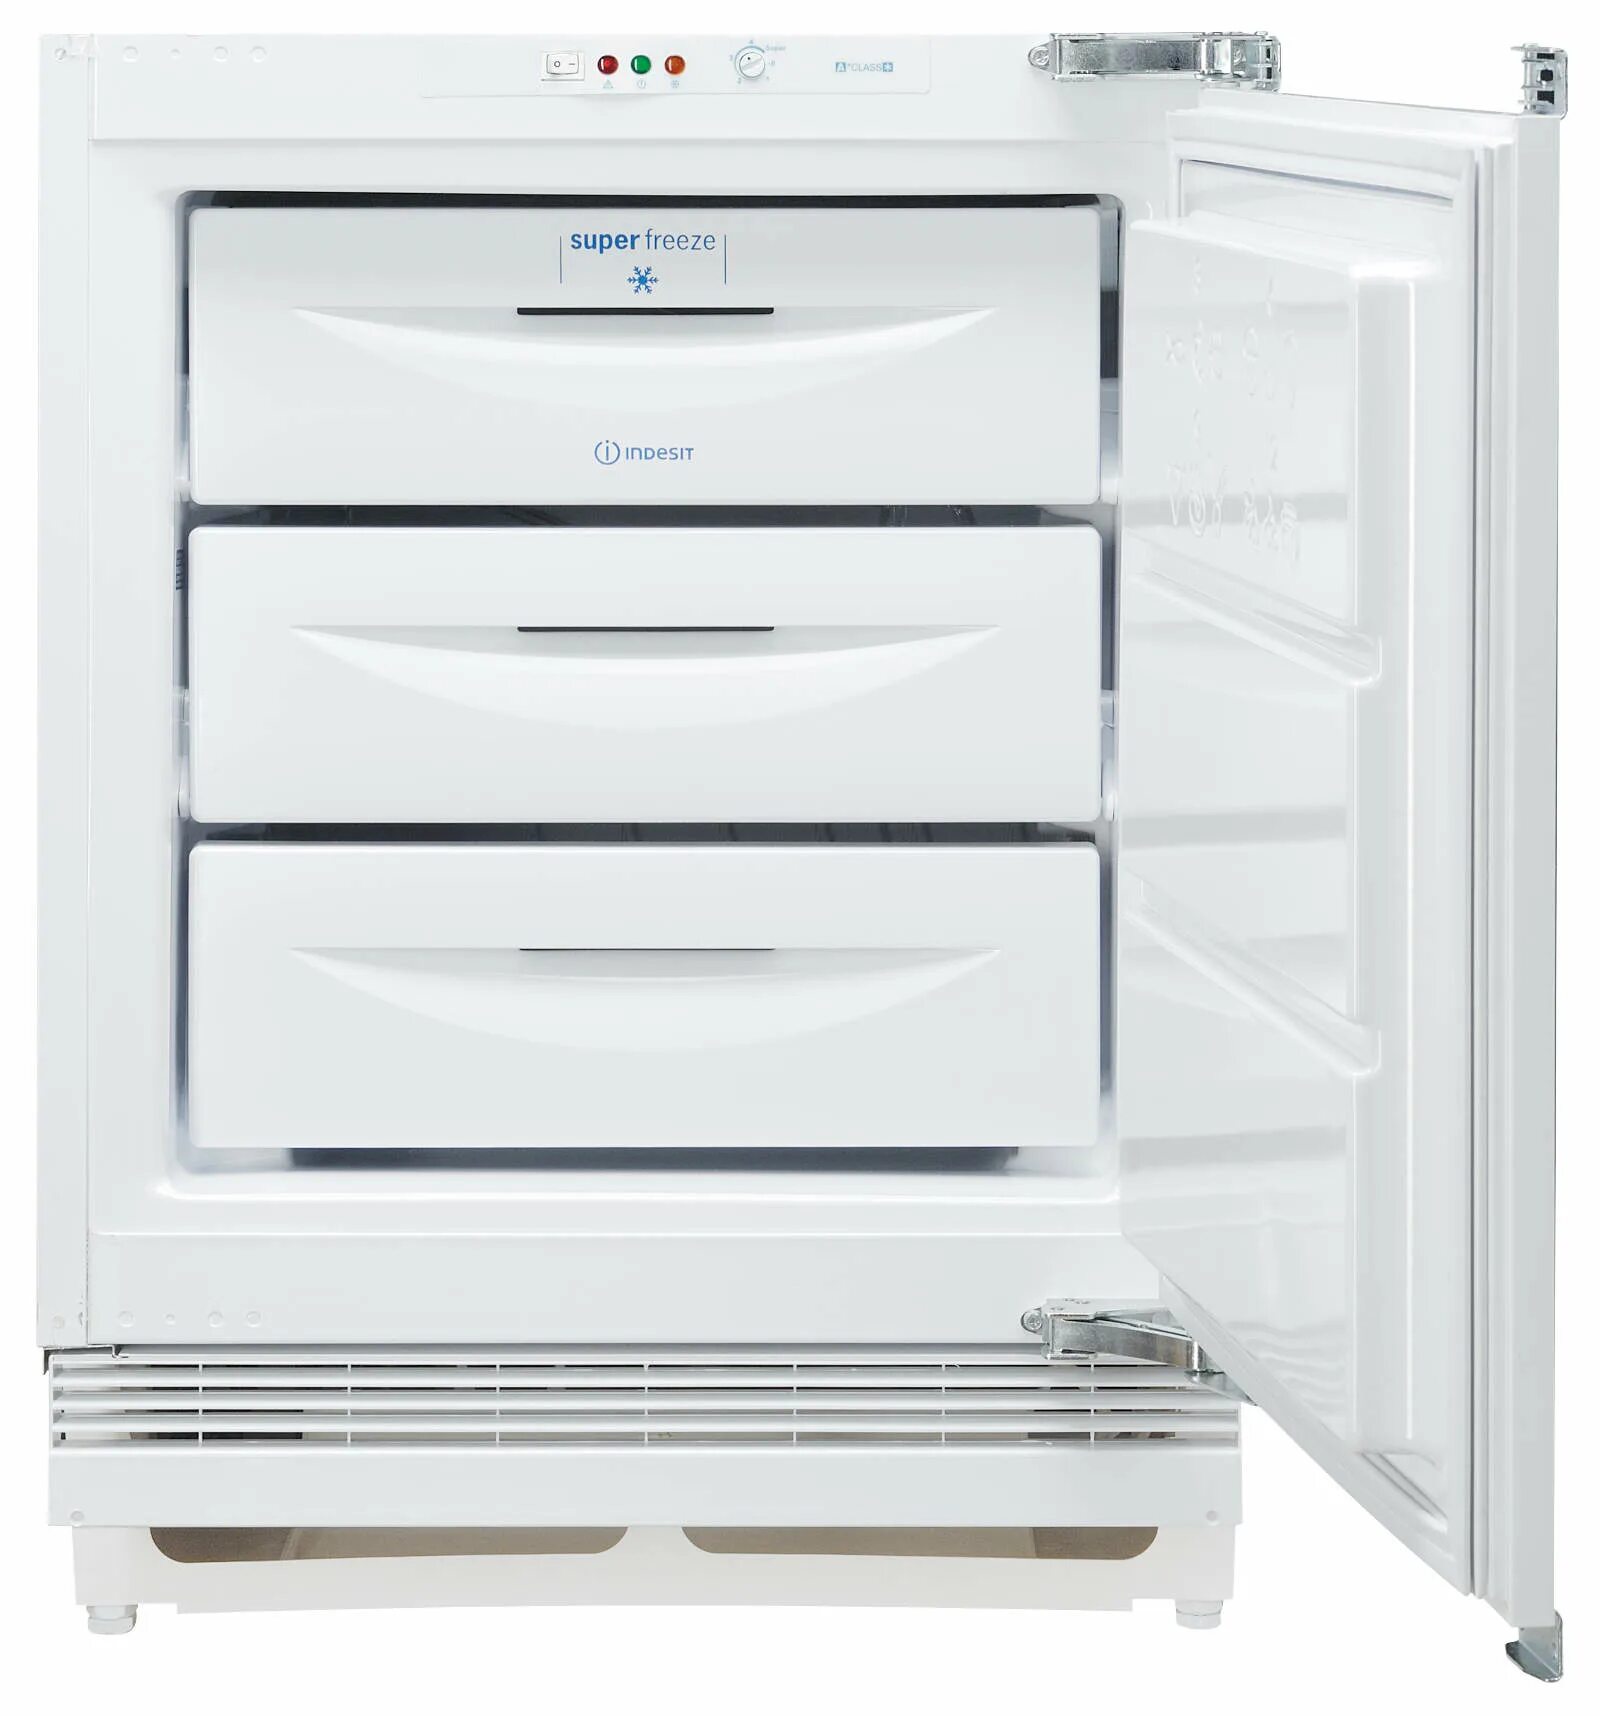 Холодильник Indesit super Freeze. Морозилка Аристон. Встроенная морозильная камера в шкаф. Морозильник Ariston встраиваемый.